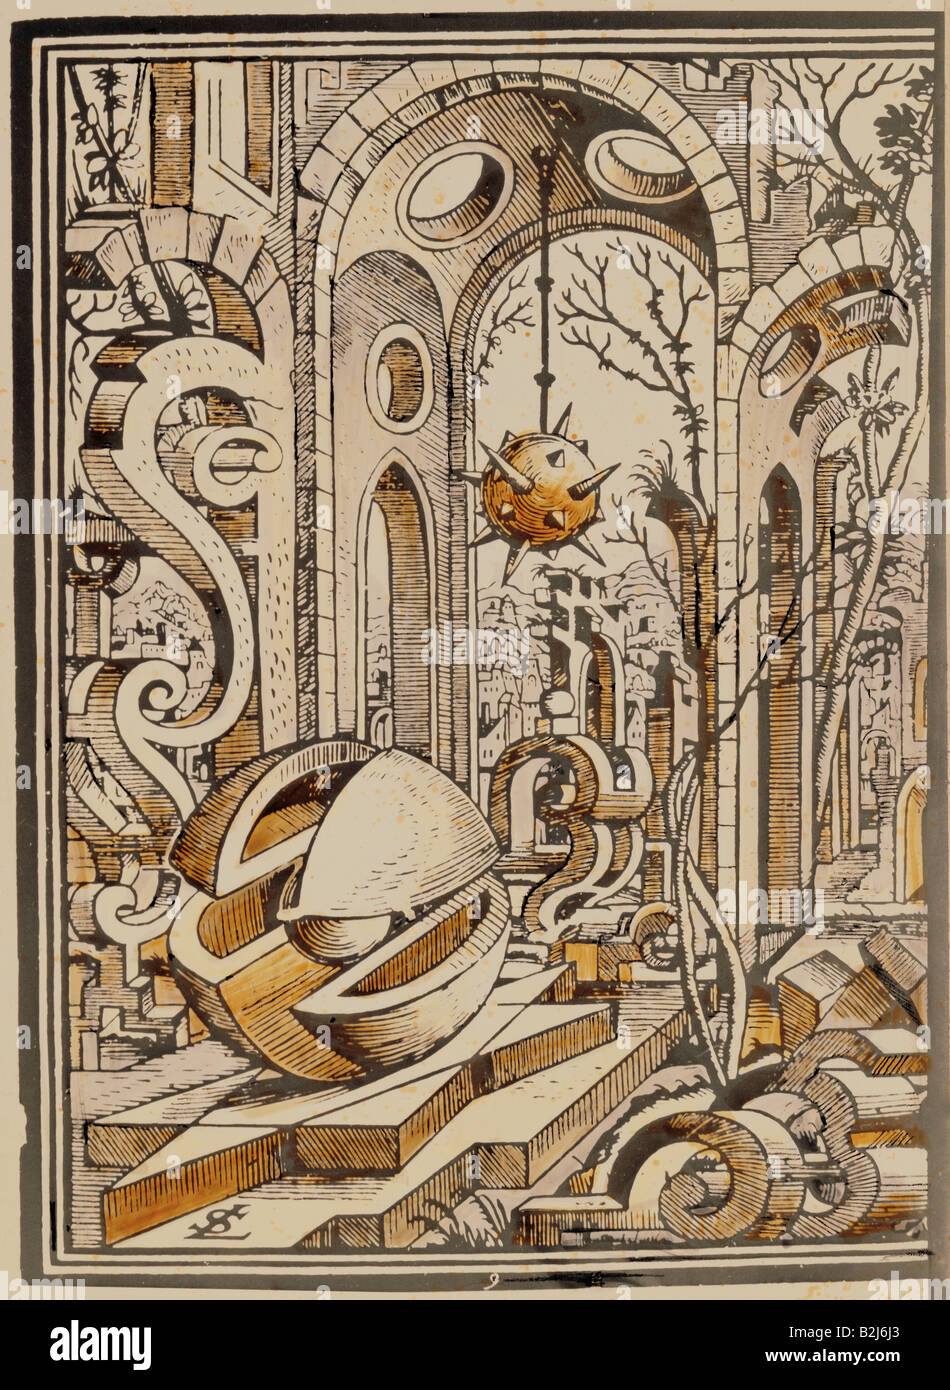 Wissenschaft, Geometrie, geometrische Landschaft, Kupferstich, "Geometria et Perspektive" von Lorenz Stoer, Augsburg, 1567, Privatsammlung, Artist's Urheberrecht nicht geklärt zu werden. Stockfoto